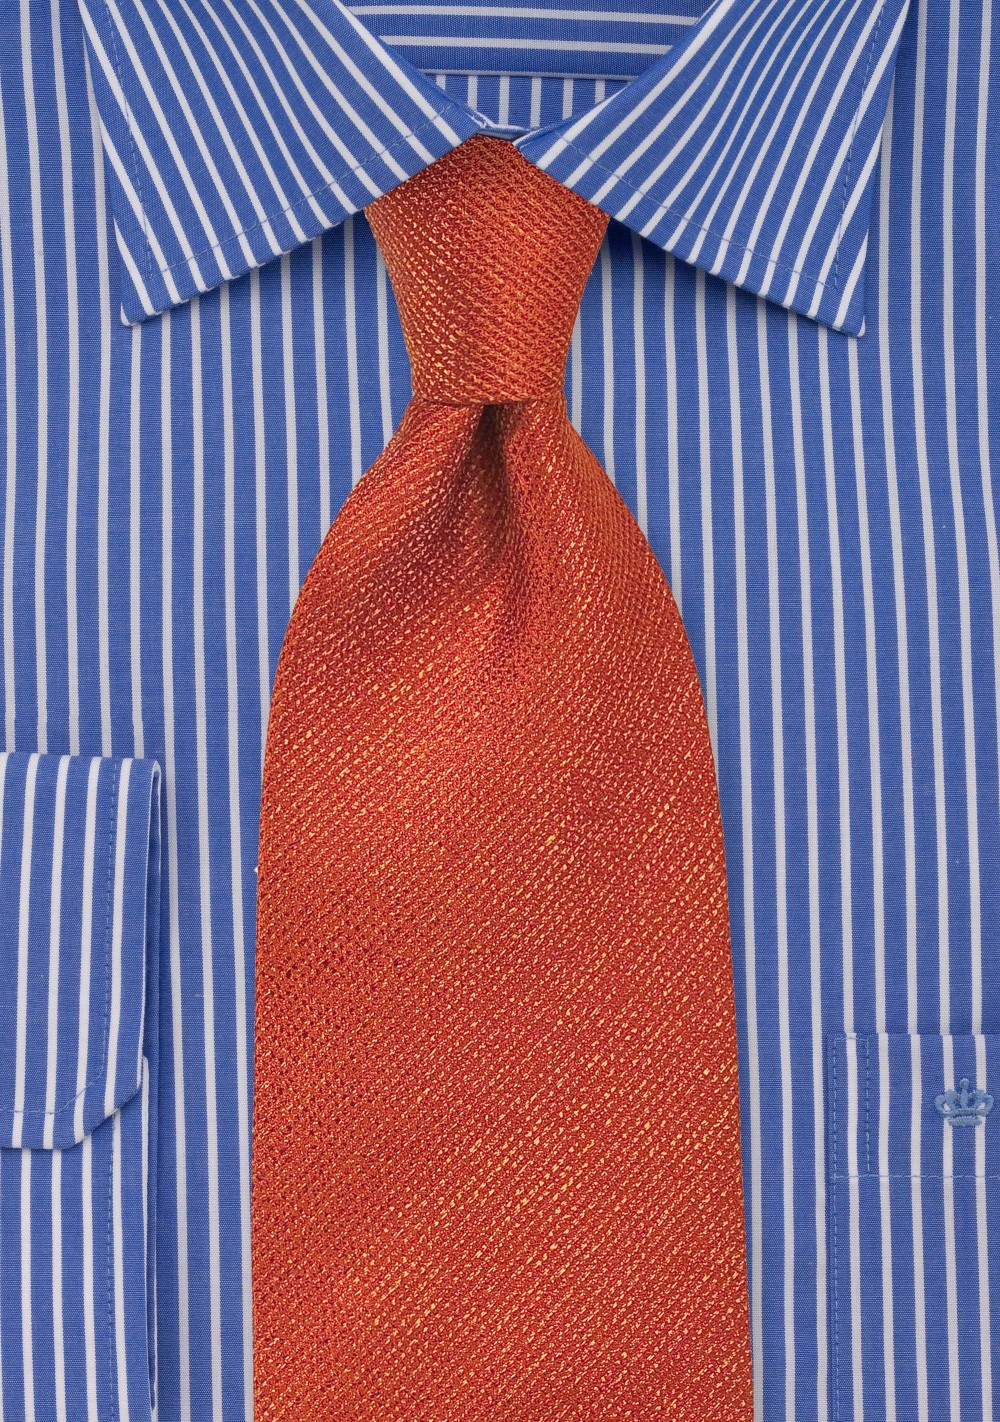 Autumn Orange Textured Silk Tie